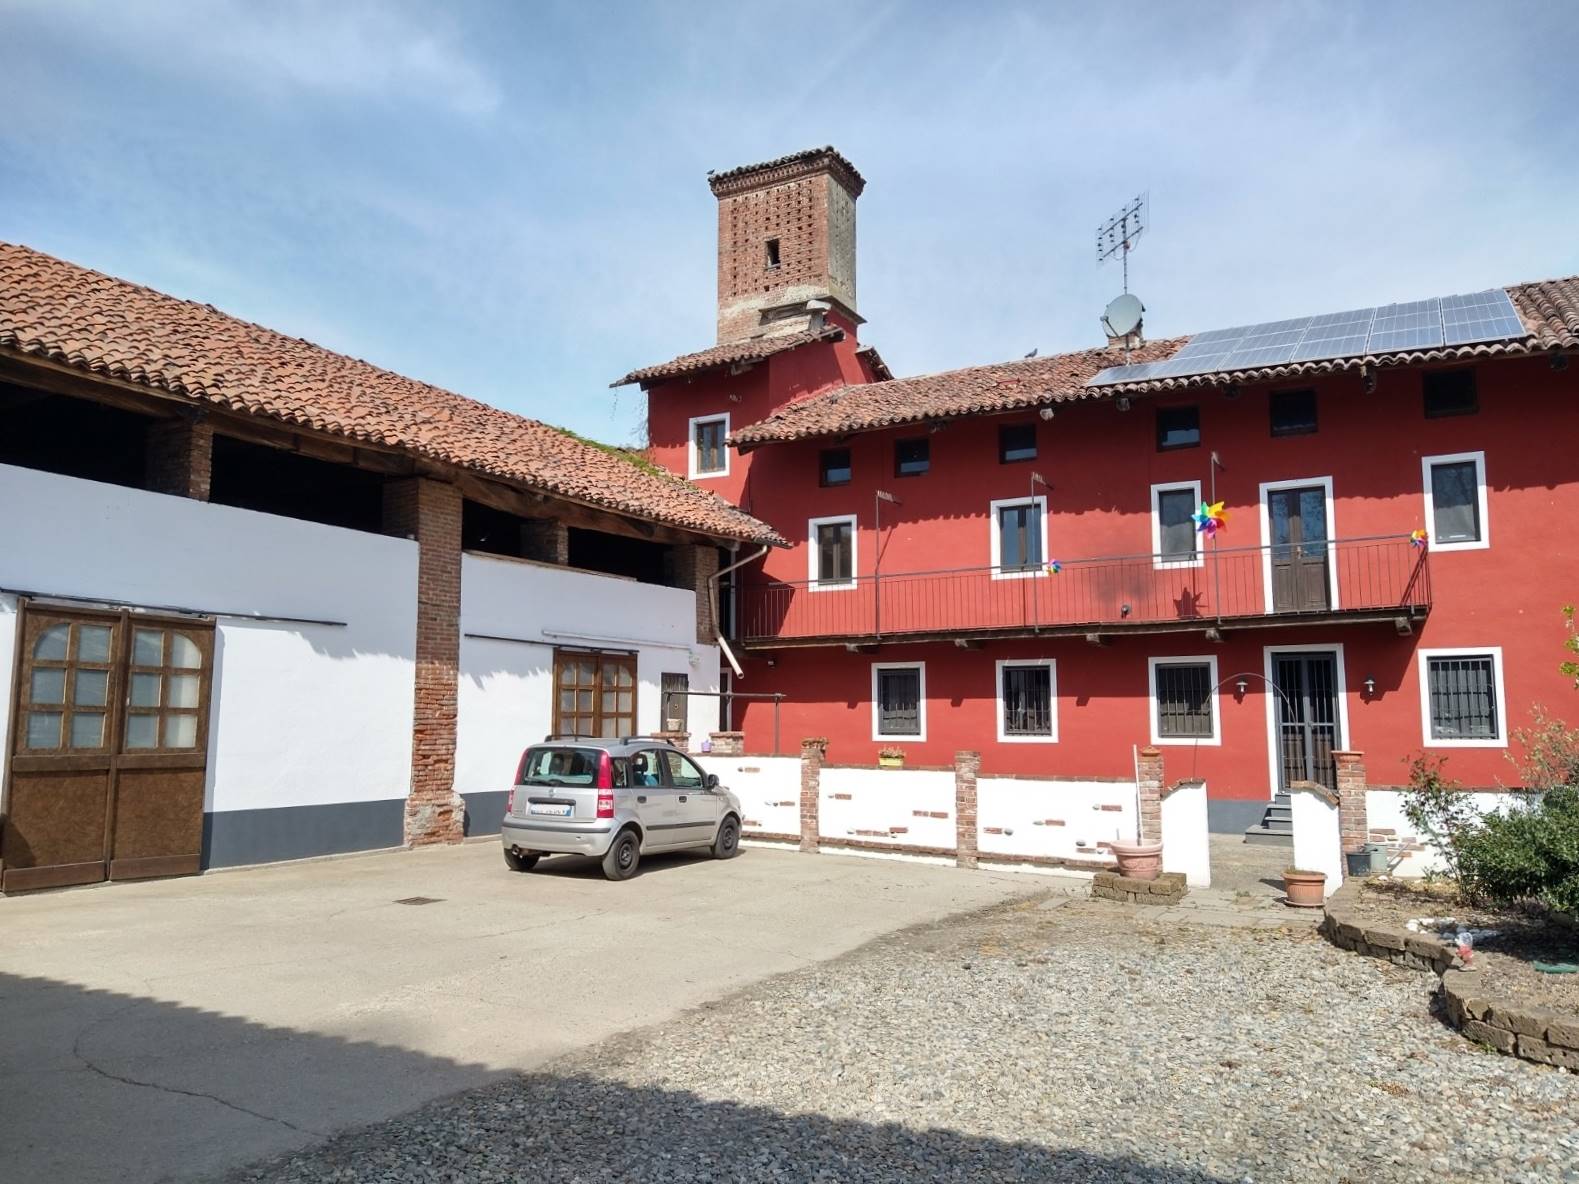 Rustico / Casale in vendita a Brandizzo, 5 locali, prezzo € 245.000 | PortaleAgenzieImmobiliari.it